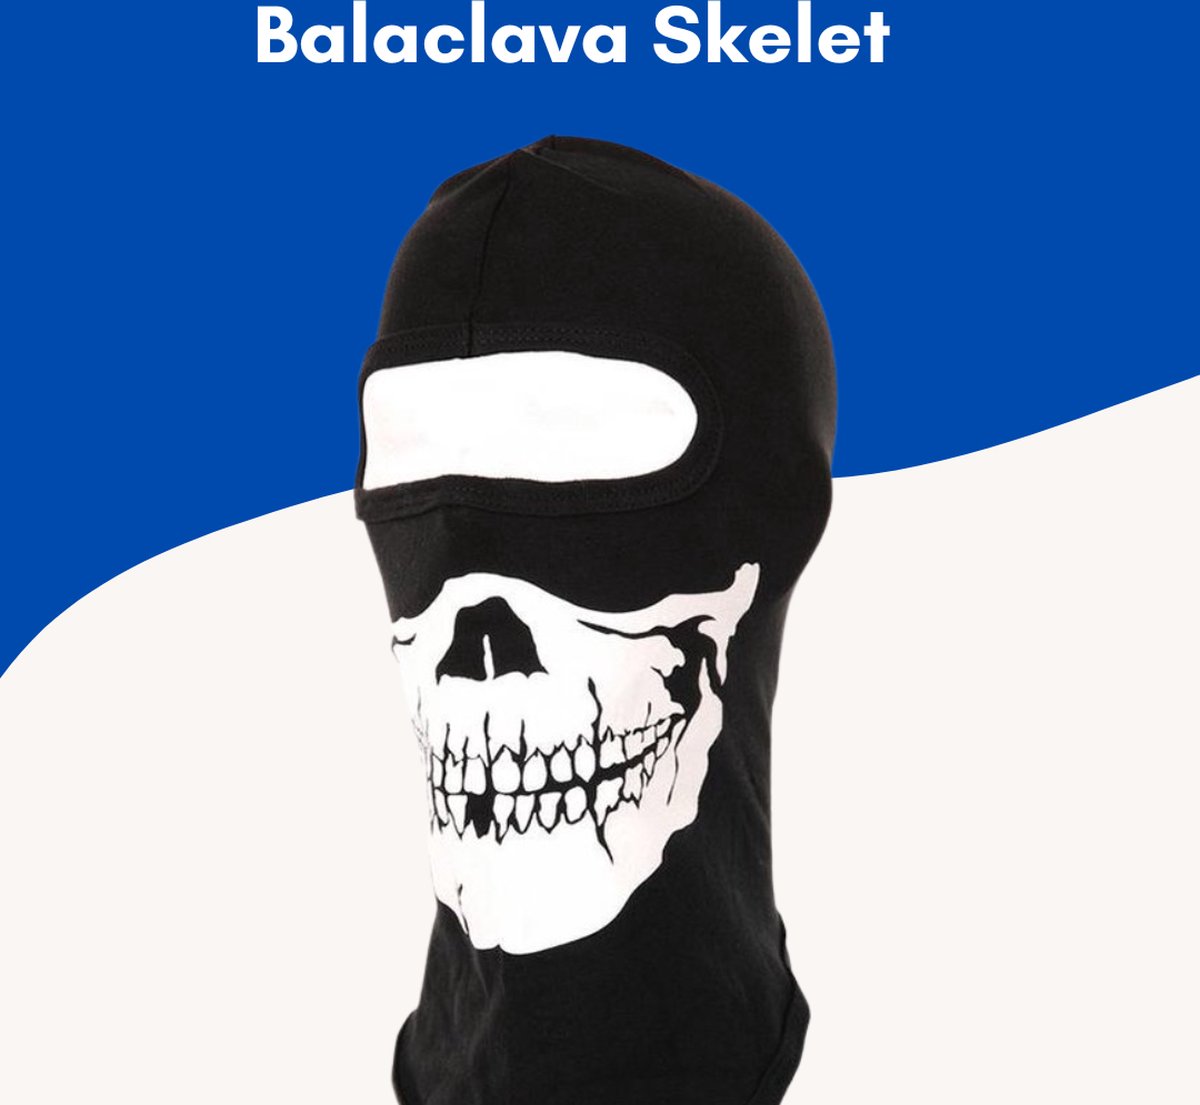 Supertarget - Bivakmuts Balaclava - Skelet- Bivak Muts Nekwarmer - One Size/Unisex - Gezichtsmasker voor o.a. Skien, Snowboarden, Motorrijden, Wielrennen & Schaatsen